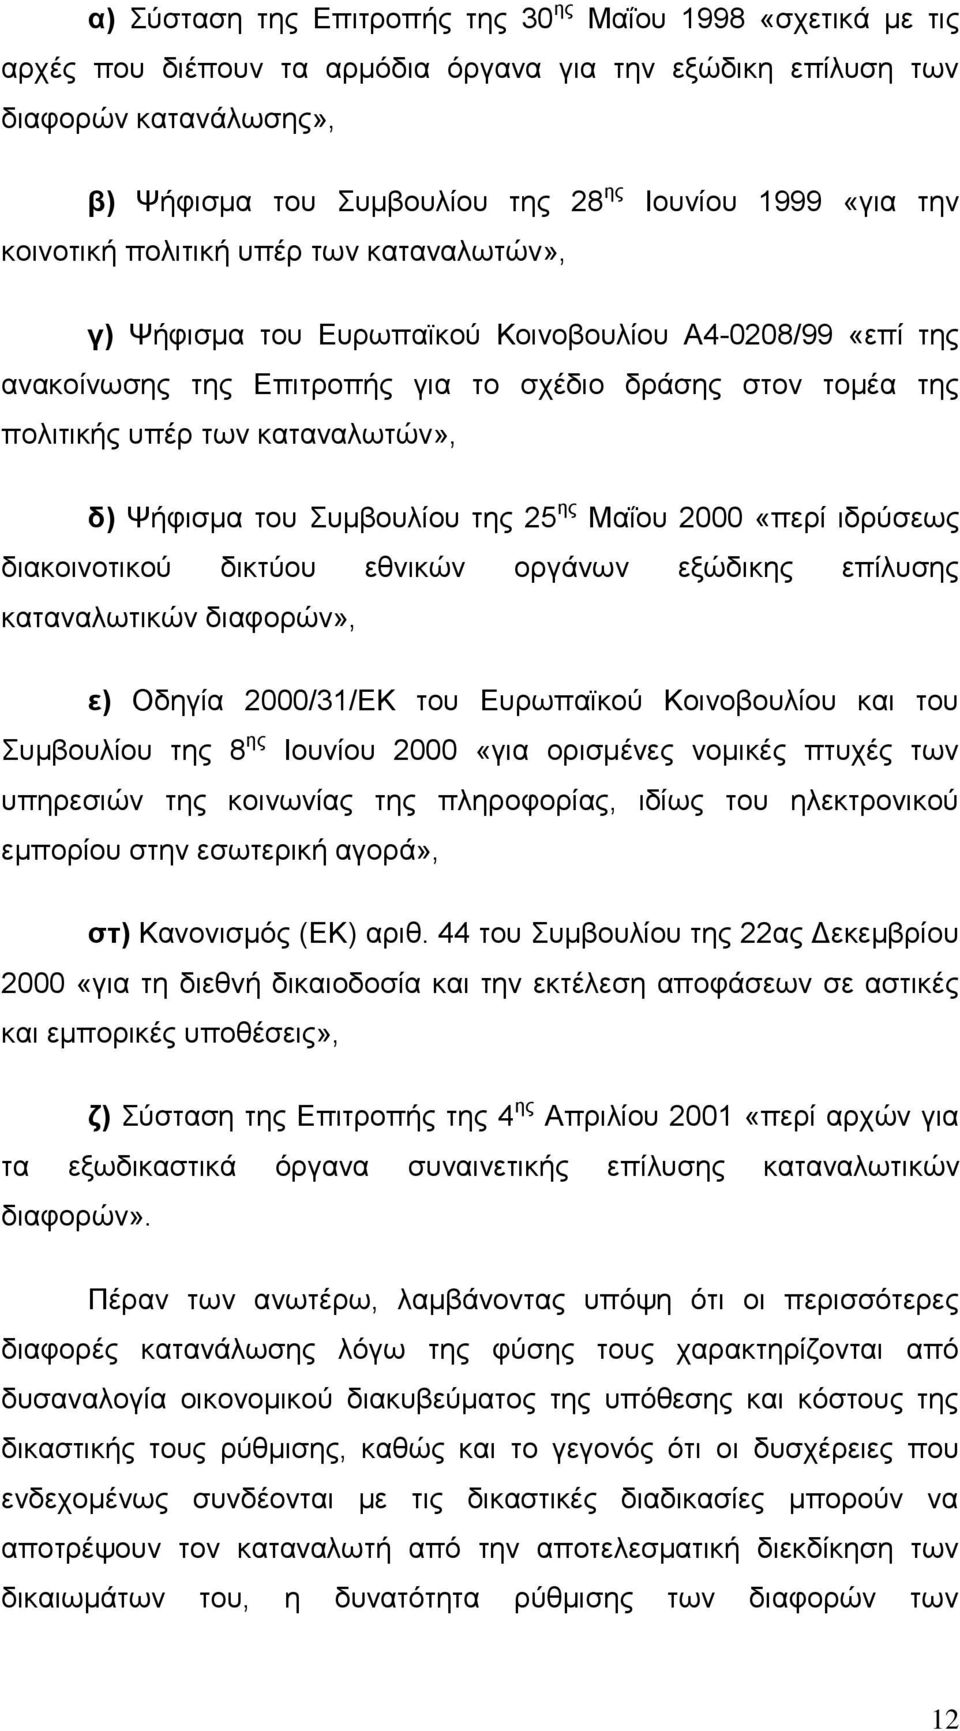 καταναλωτών», δ) Ψήφισμα του Συμβουλίου της 25 ης Μαΐου 2000 «περί ιδρύσεως διακοινοτικού δικτύου εθνικών οργάνων εξώδικης επίλυσης καταναλωτικών διαφορών», ε) Οδηγία 2000/31/ΕΚ του Ευρωπαϊκού